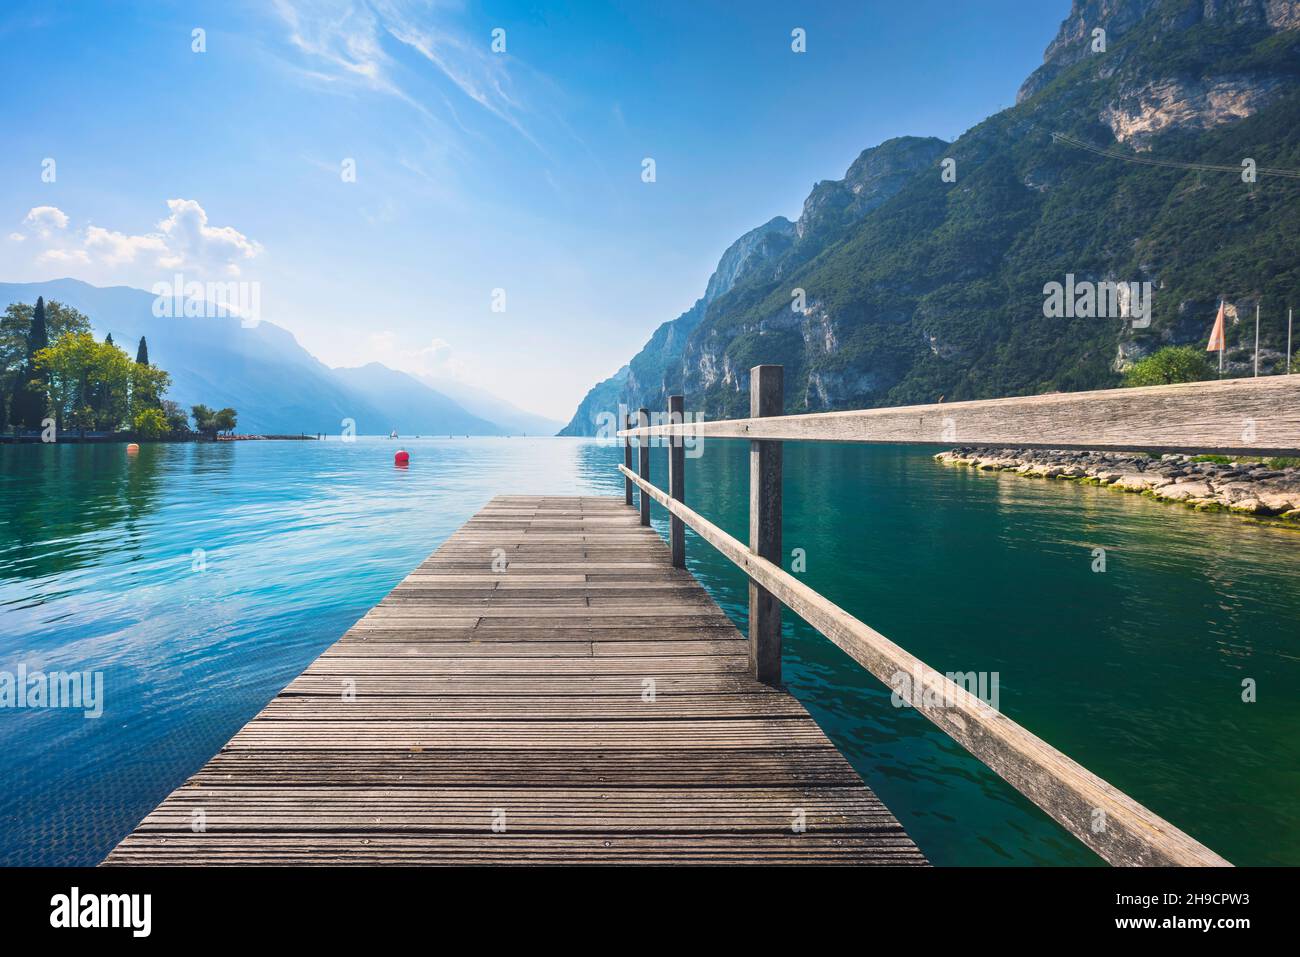 Jetée en bois sur le lac.Riva del Garda, Trentin, Italie, Europe. Banque D'Images